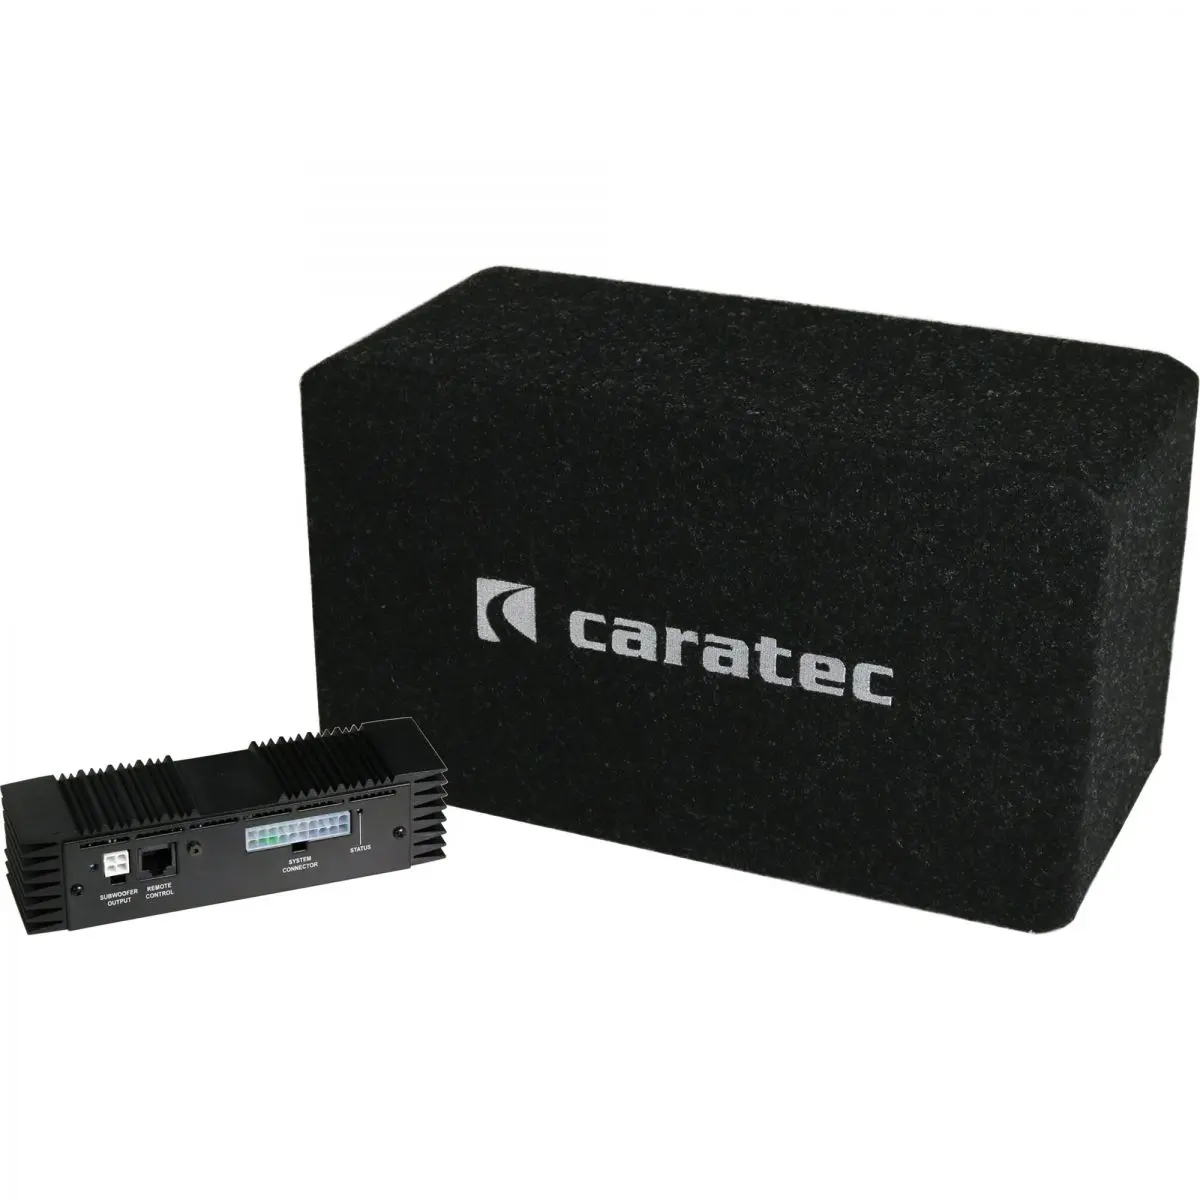 Sistem audio Caratec CAS200D pentru Fiat Ducato din 2006/07 cu pregatire pentru radio, - 4 canale